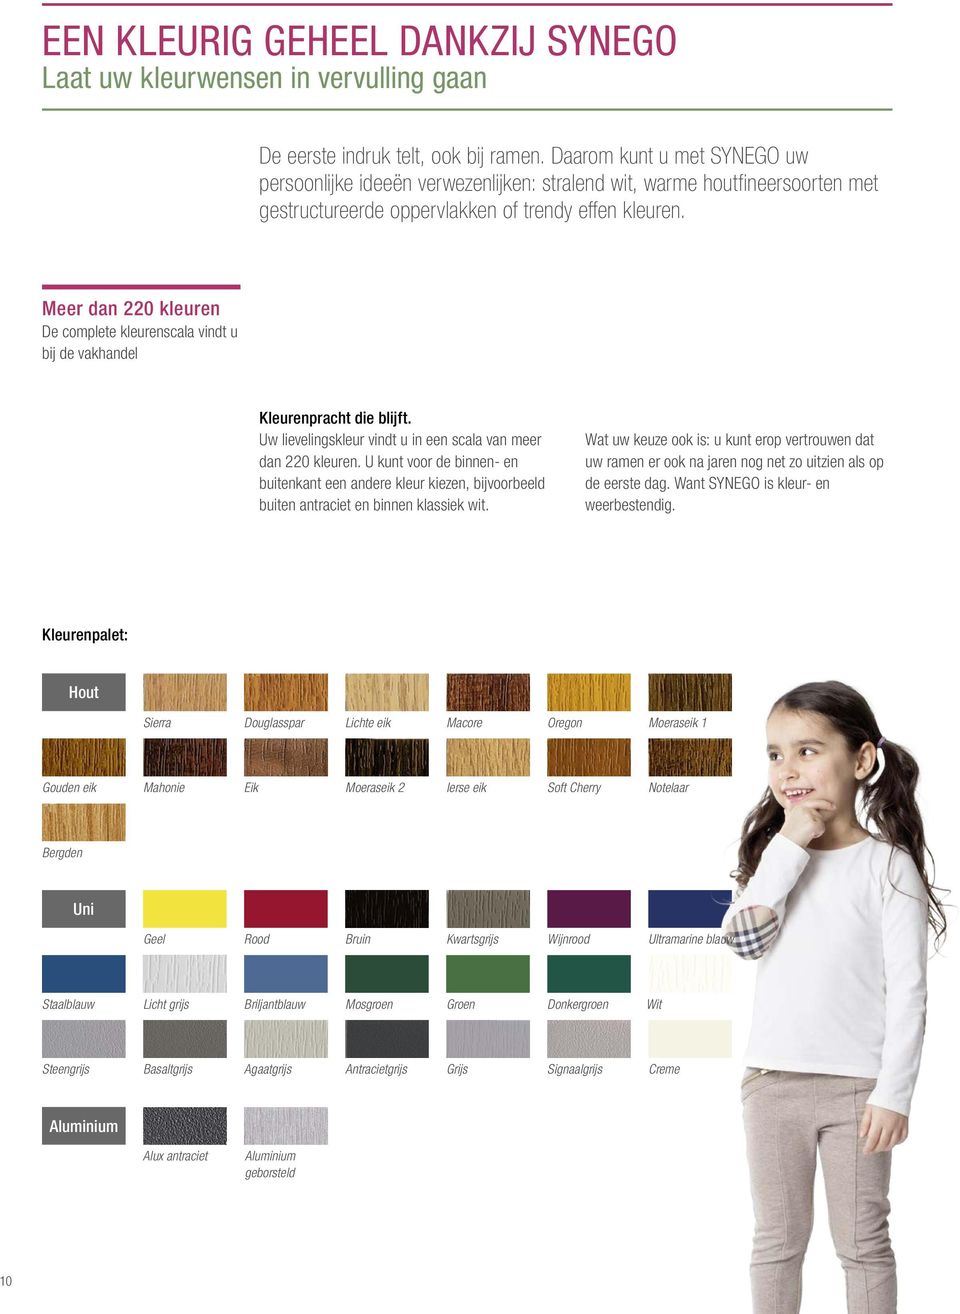 Meer dan 220 kleuren De complete kleurenscala vindt u bij de vakhandel Kleurenpracht die blijft. Uw lievelingskleur vindt u in een scala van meer dan 220 kleuren.